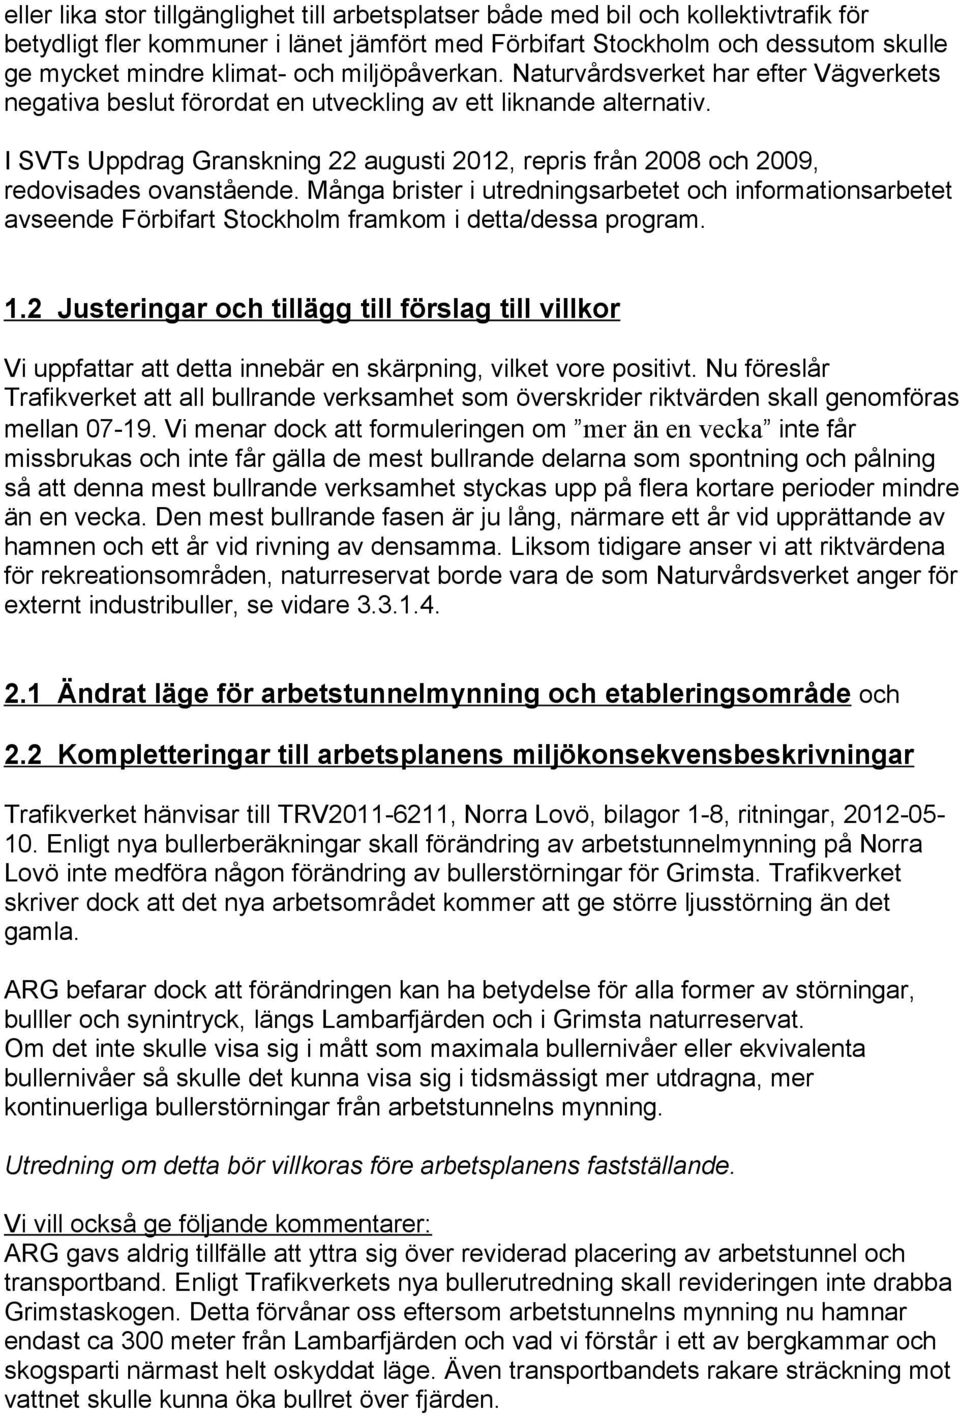 I SVTs Uppdrag Granskning 22 augusti 2012, repris från 2008 och 2009, redovisades ovanstående.